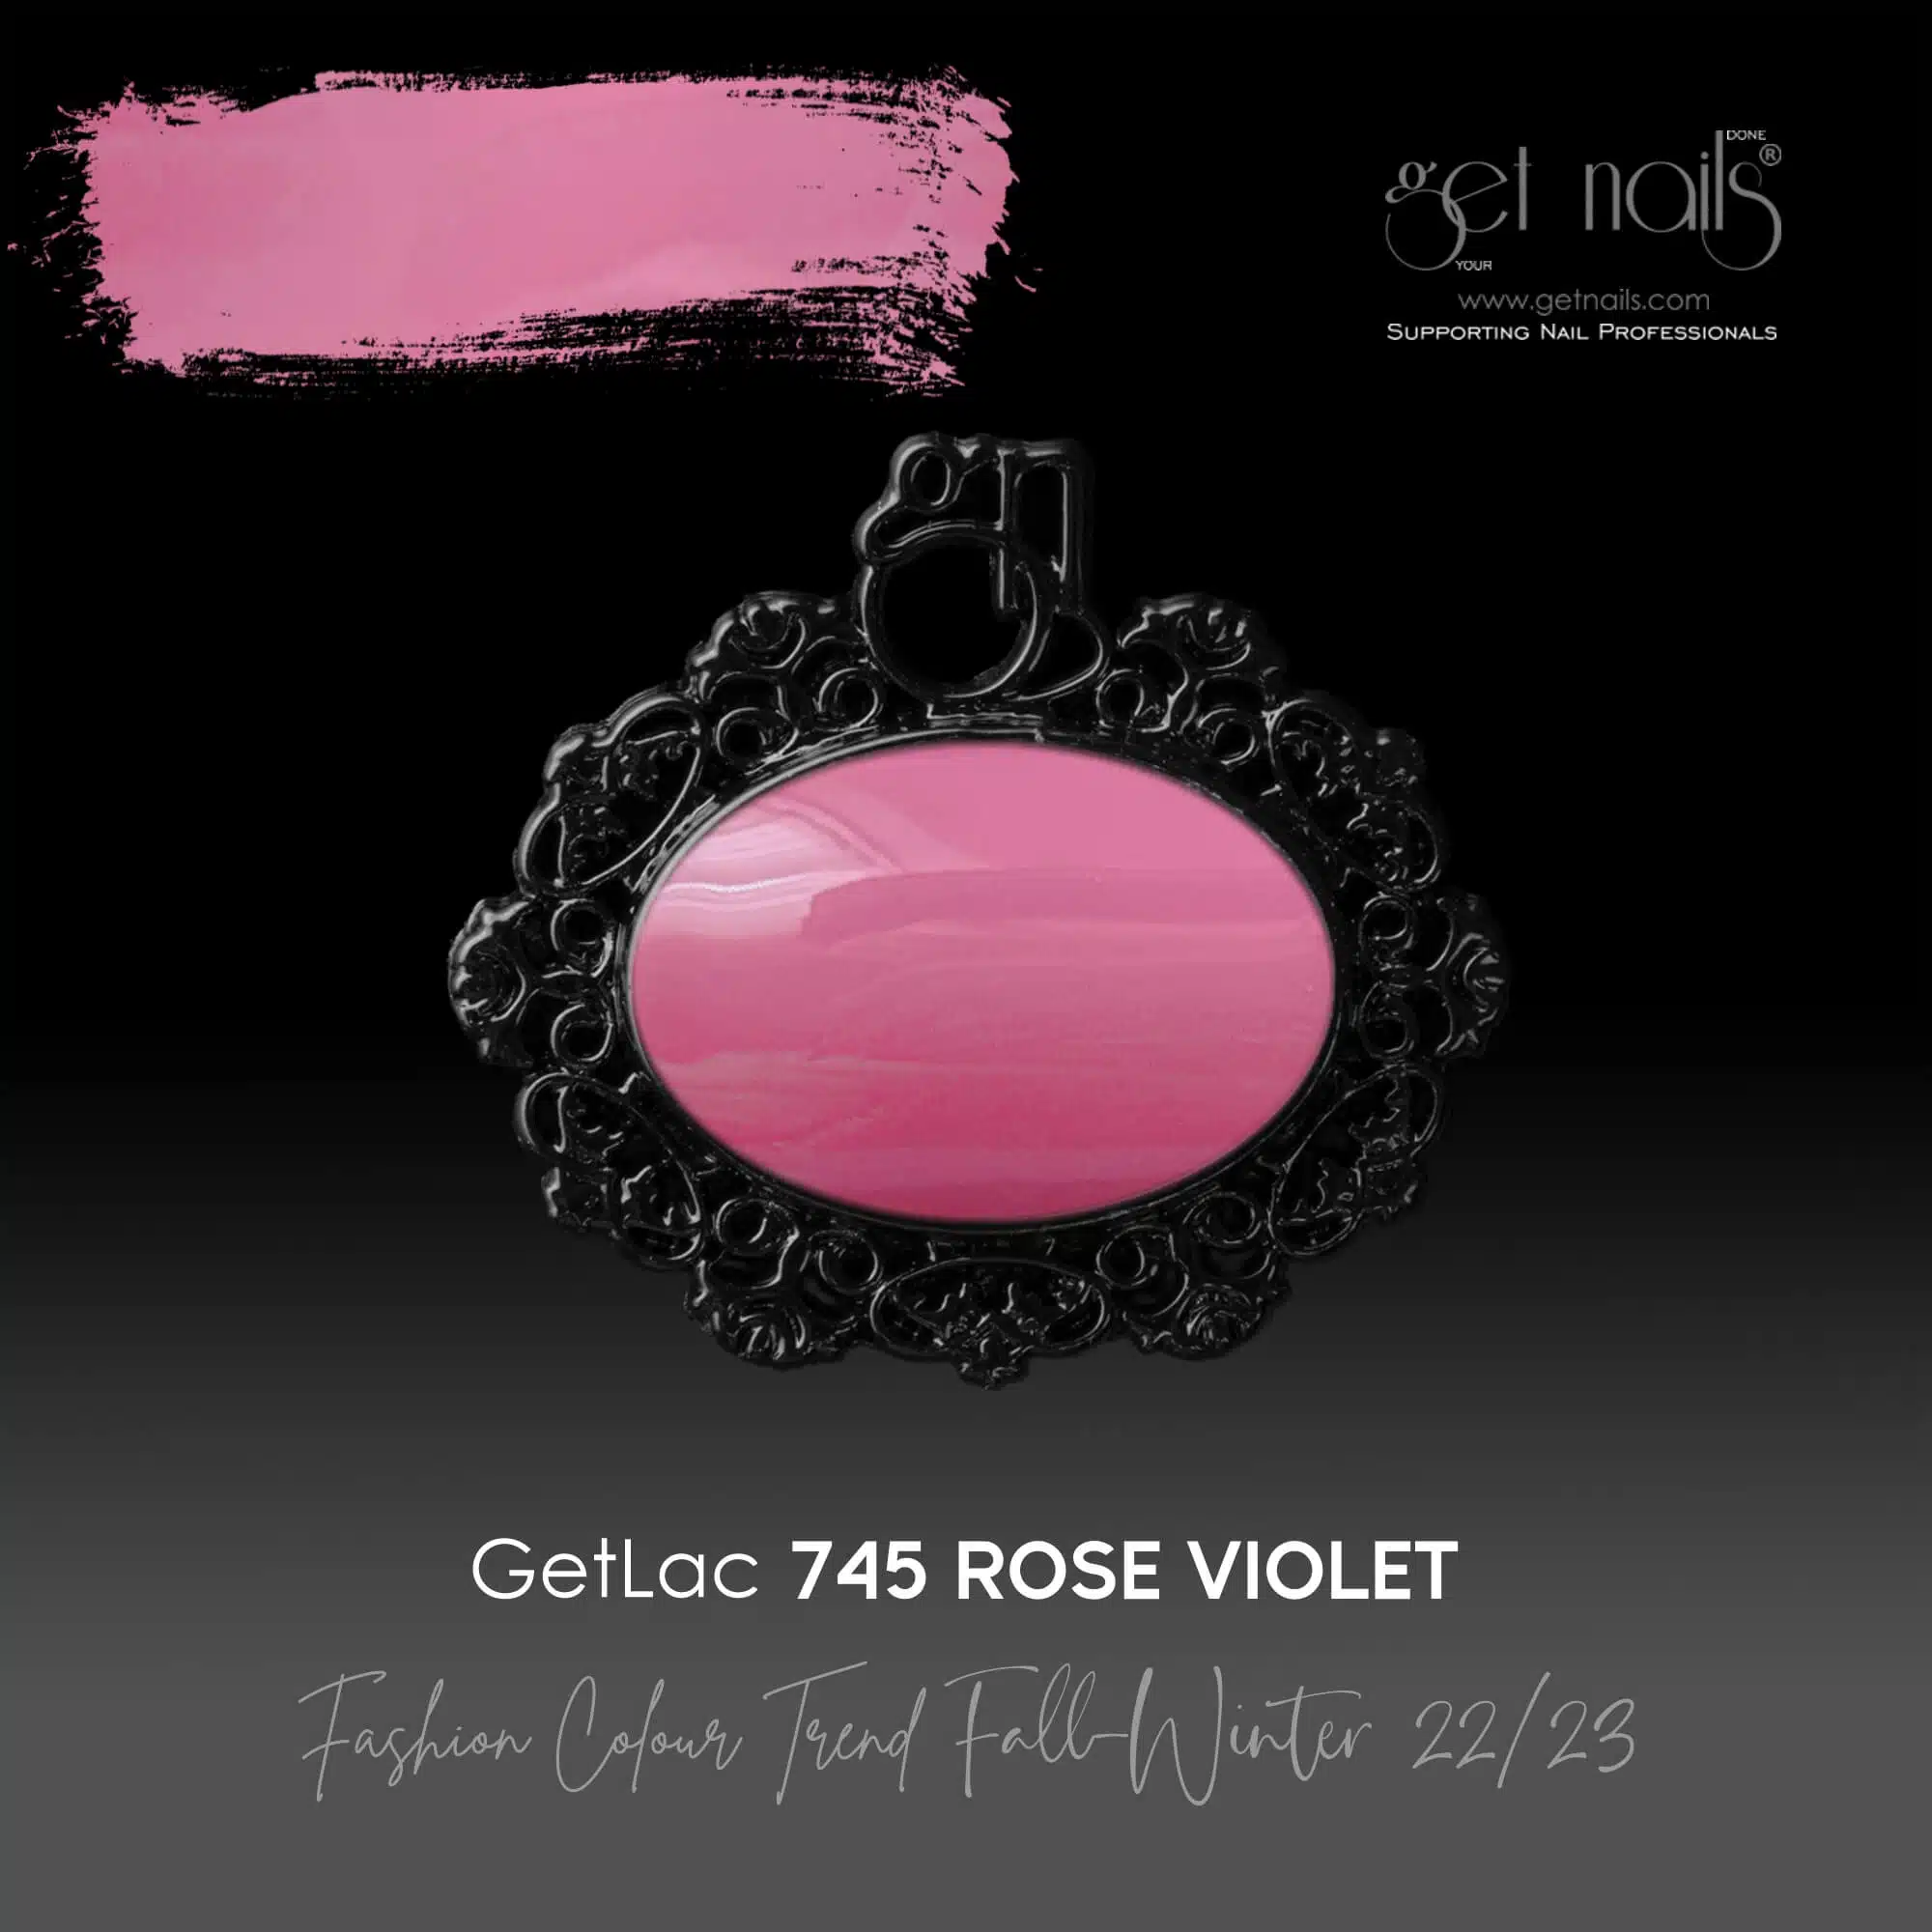 Get Nails Austria - GetLac 745 Rose Violet 15g